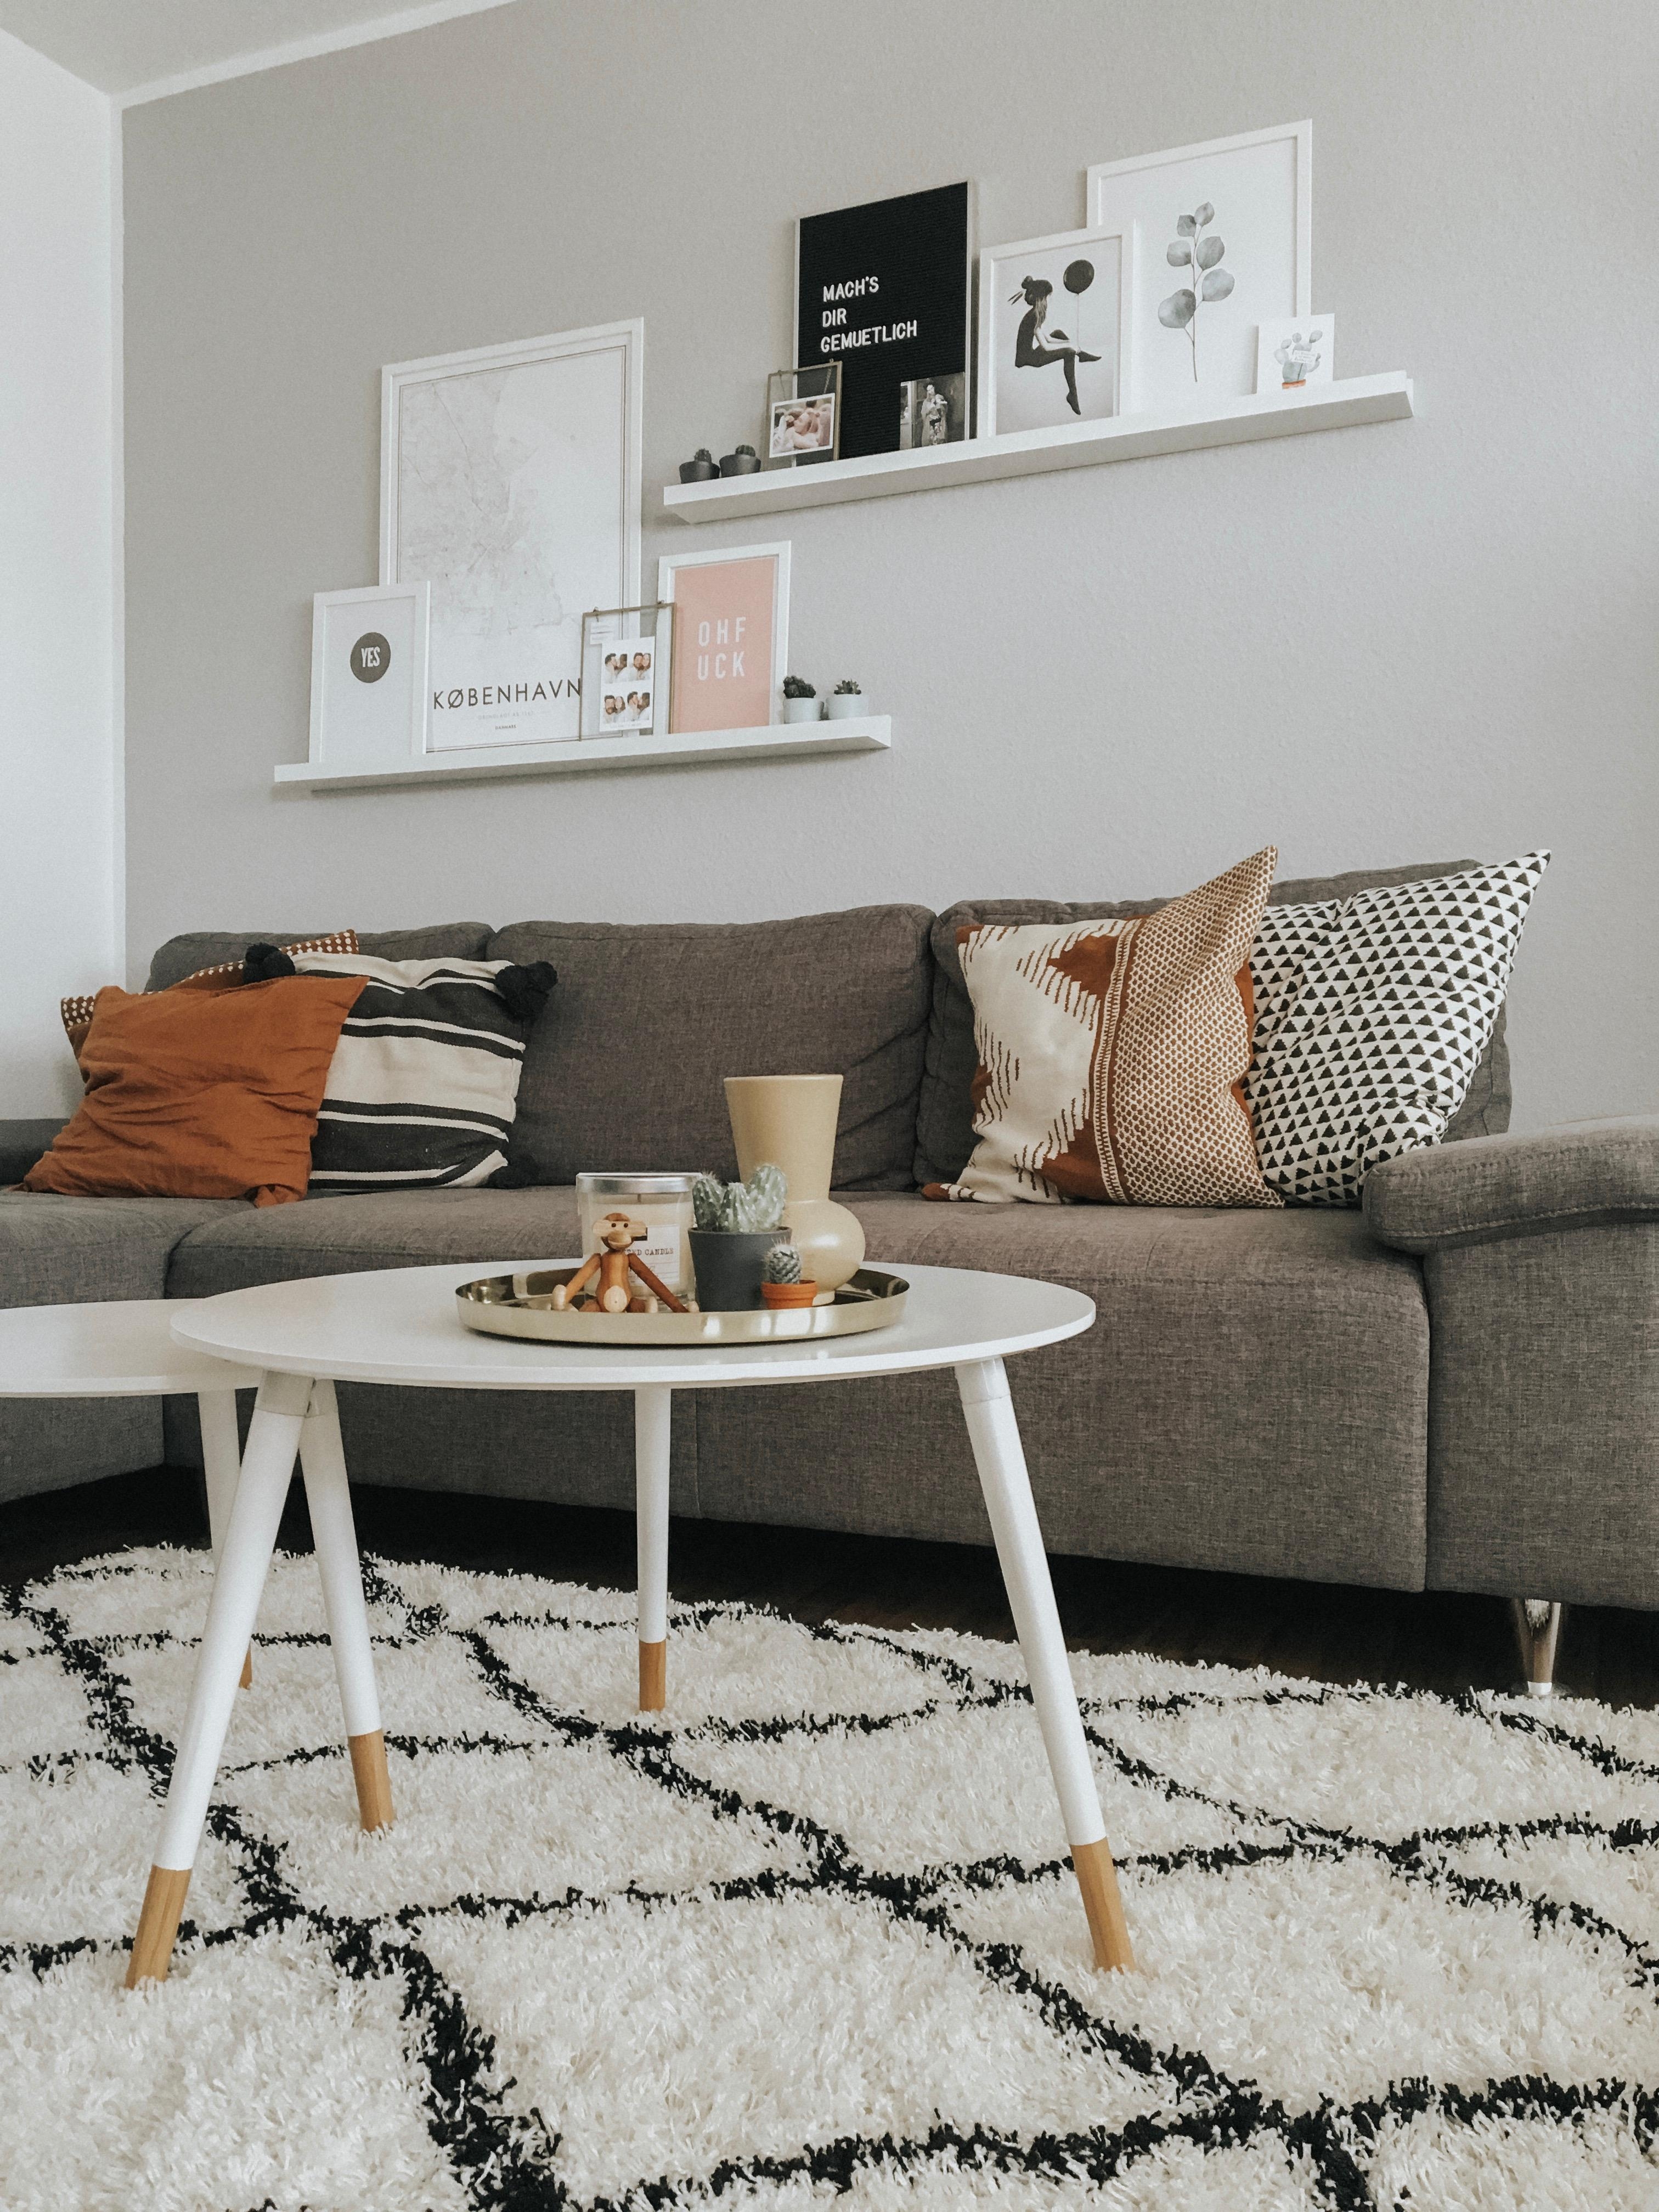 Neue Farben im Wohnzimmer 🧡
#livingroom #love #home #colours #scandinaviandesign 